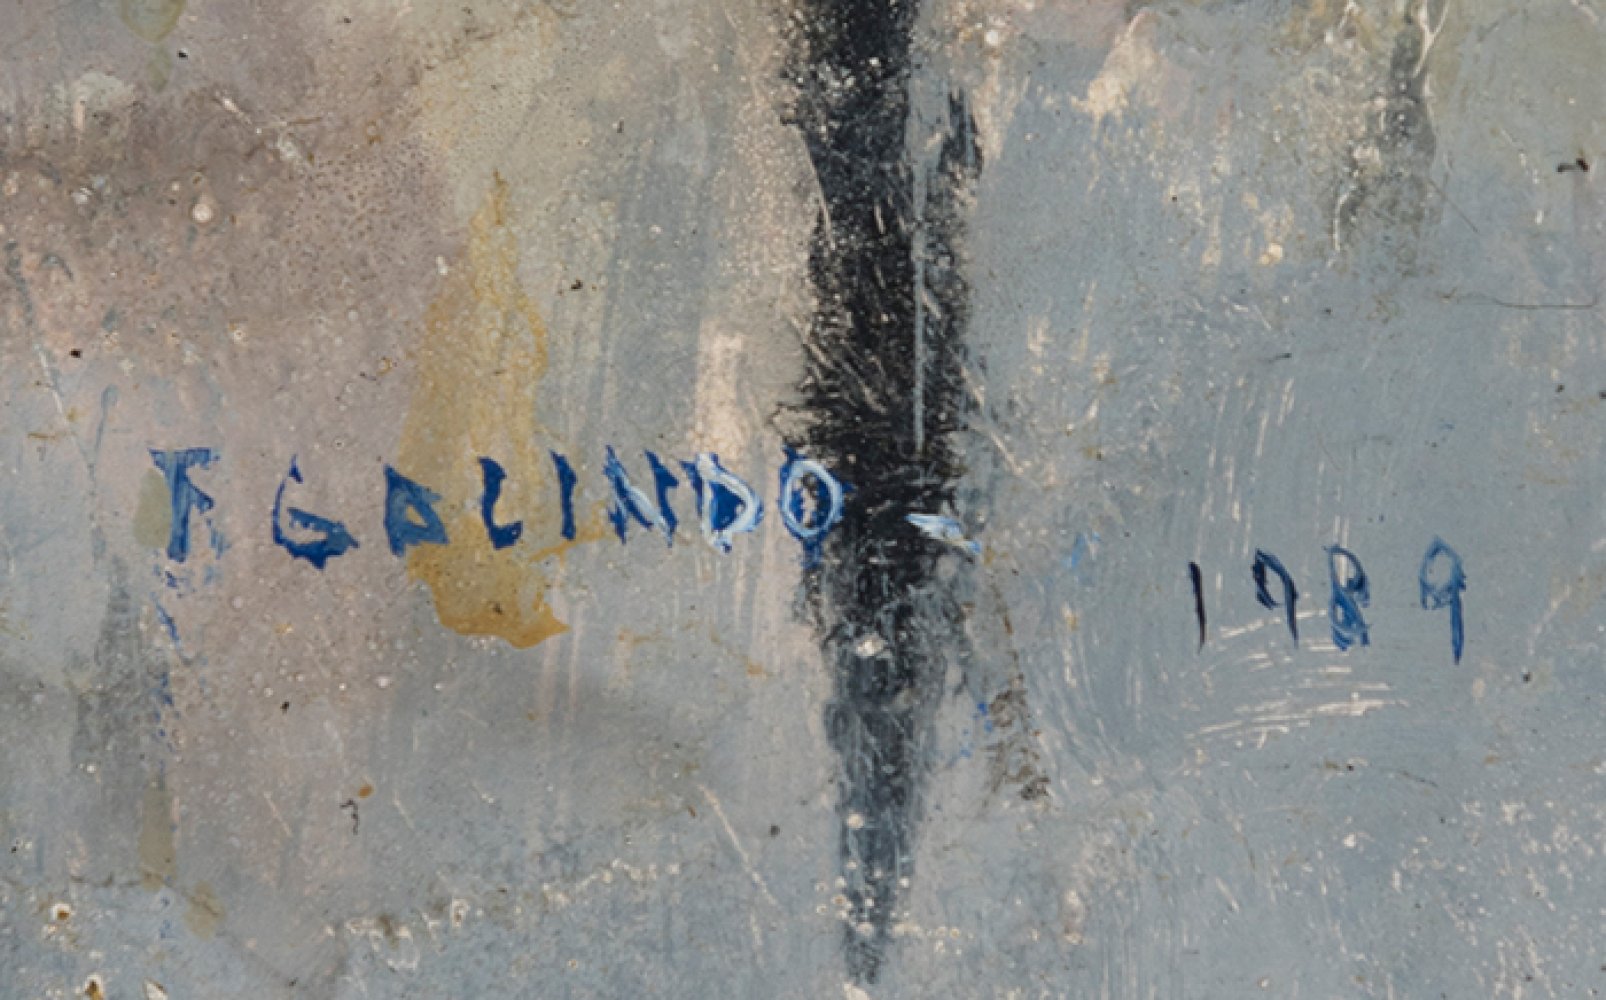 FLORENCIO GALINDO DE LA VARA (Adanero, 1947 - Avila, 28 October 2016)."Palomar. 1989.Oil on panel. - Image 2 of 6